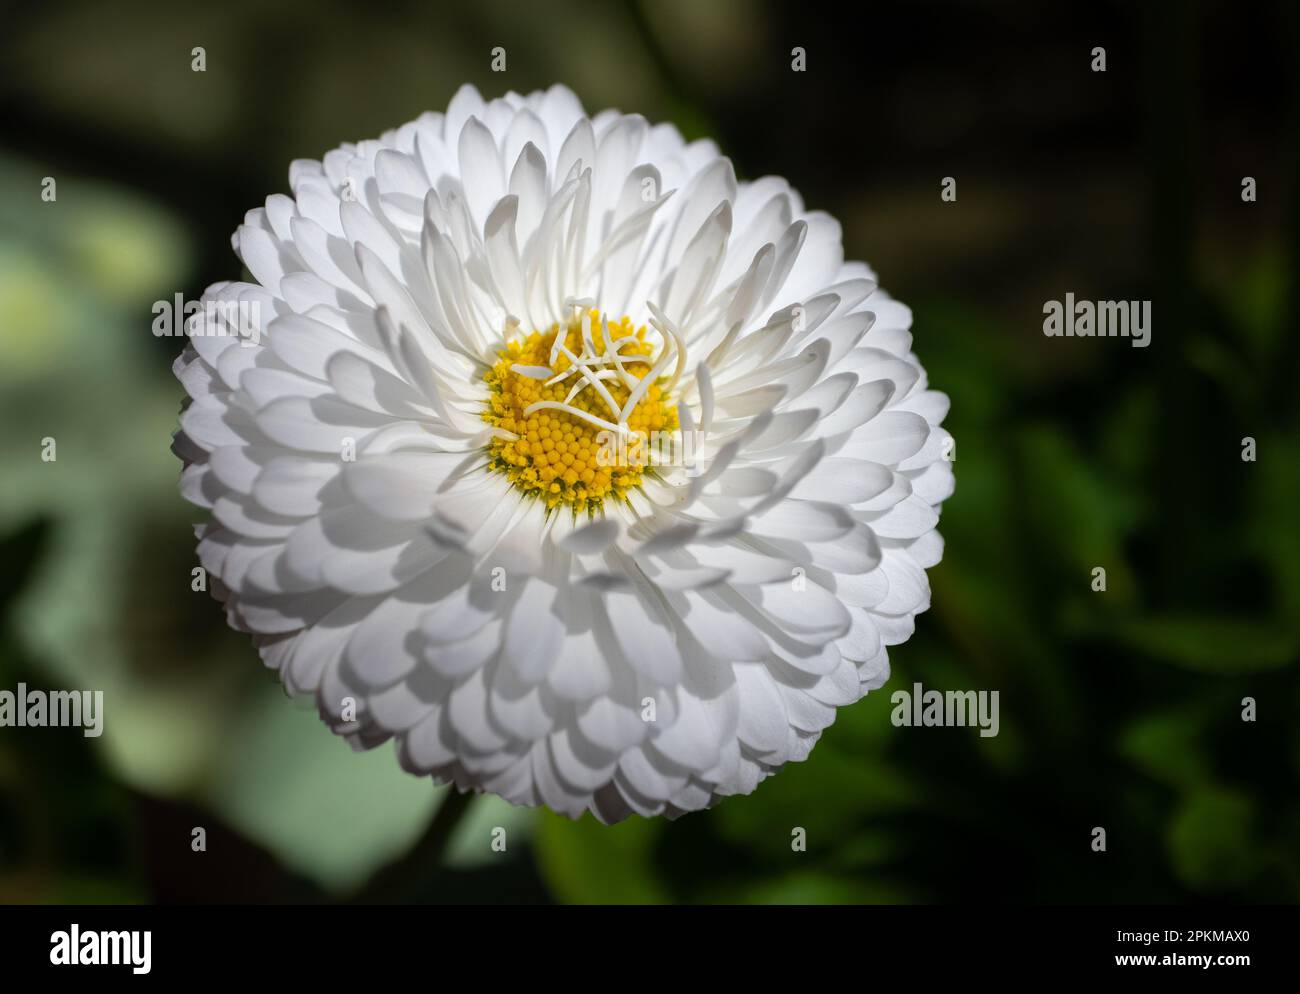 Macro de una flor de aster blanco aislada con el fondo natural Stock Photo